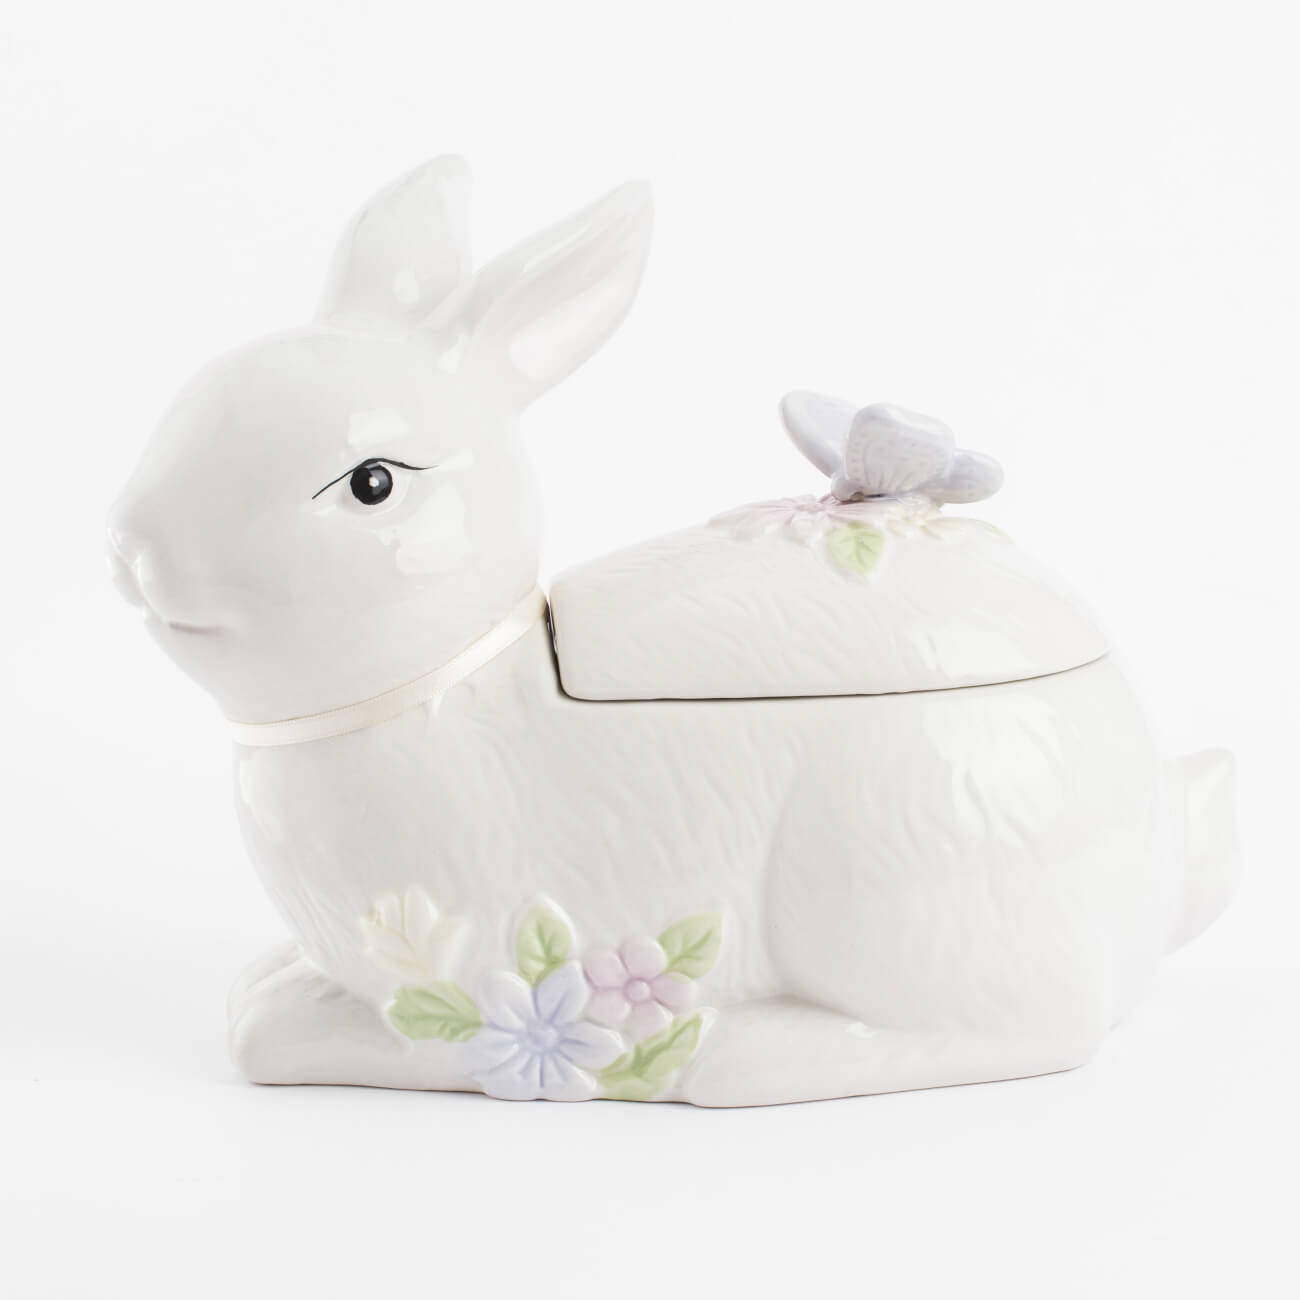 конфетница 18x13 см керамика перламутр кролик с корзиной в ах easter Емкость для хранения, 25х19 см, 1,1 л, керамика, белая, Кролик с бабочкой, Easter